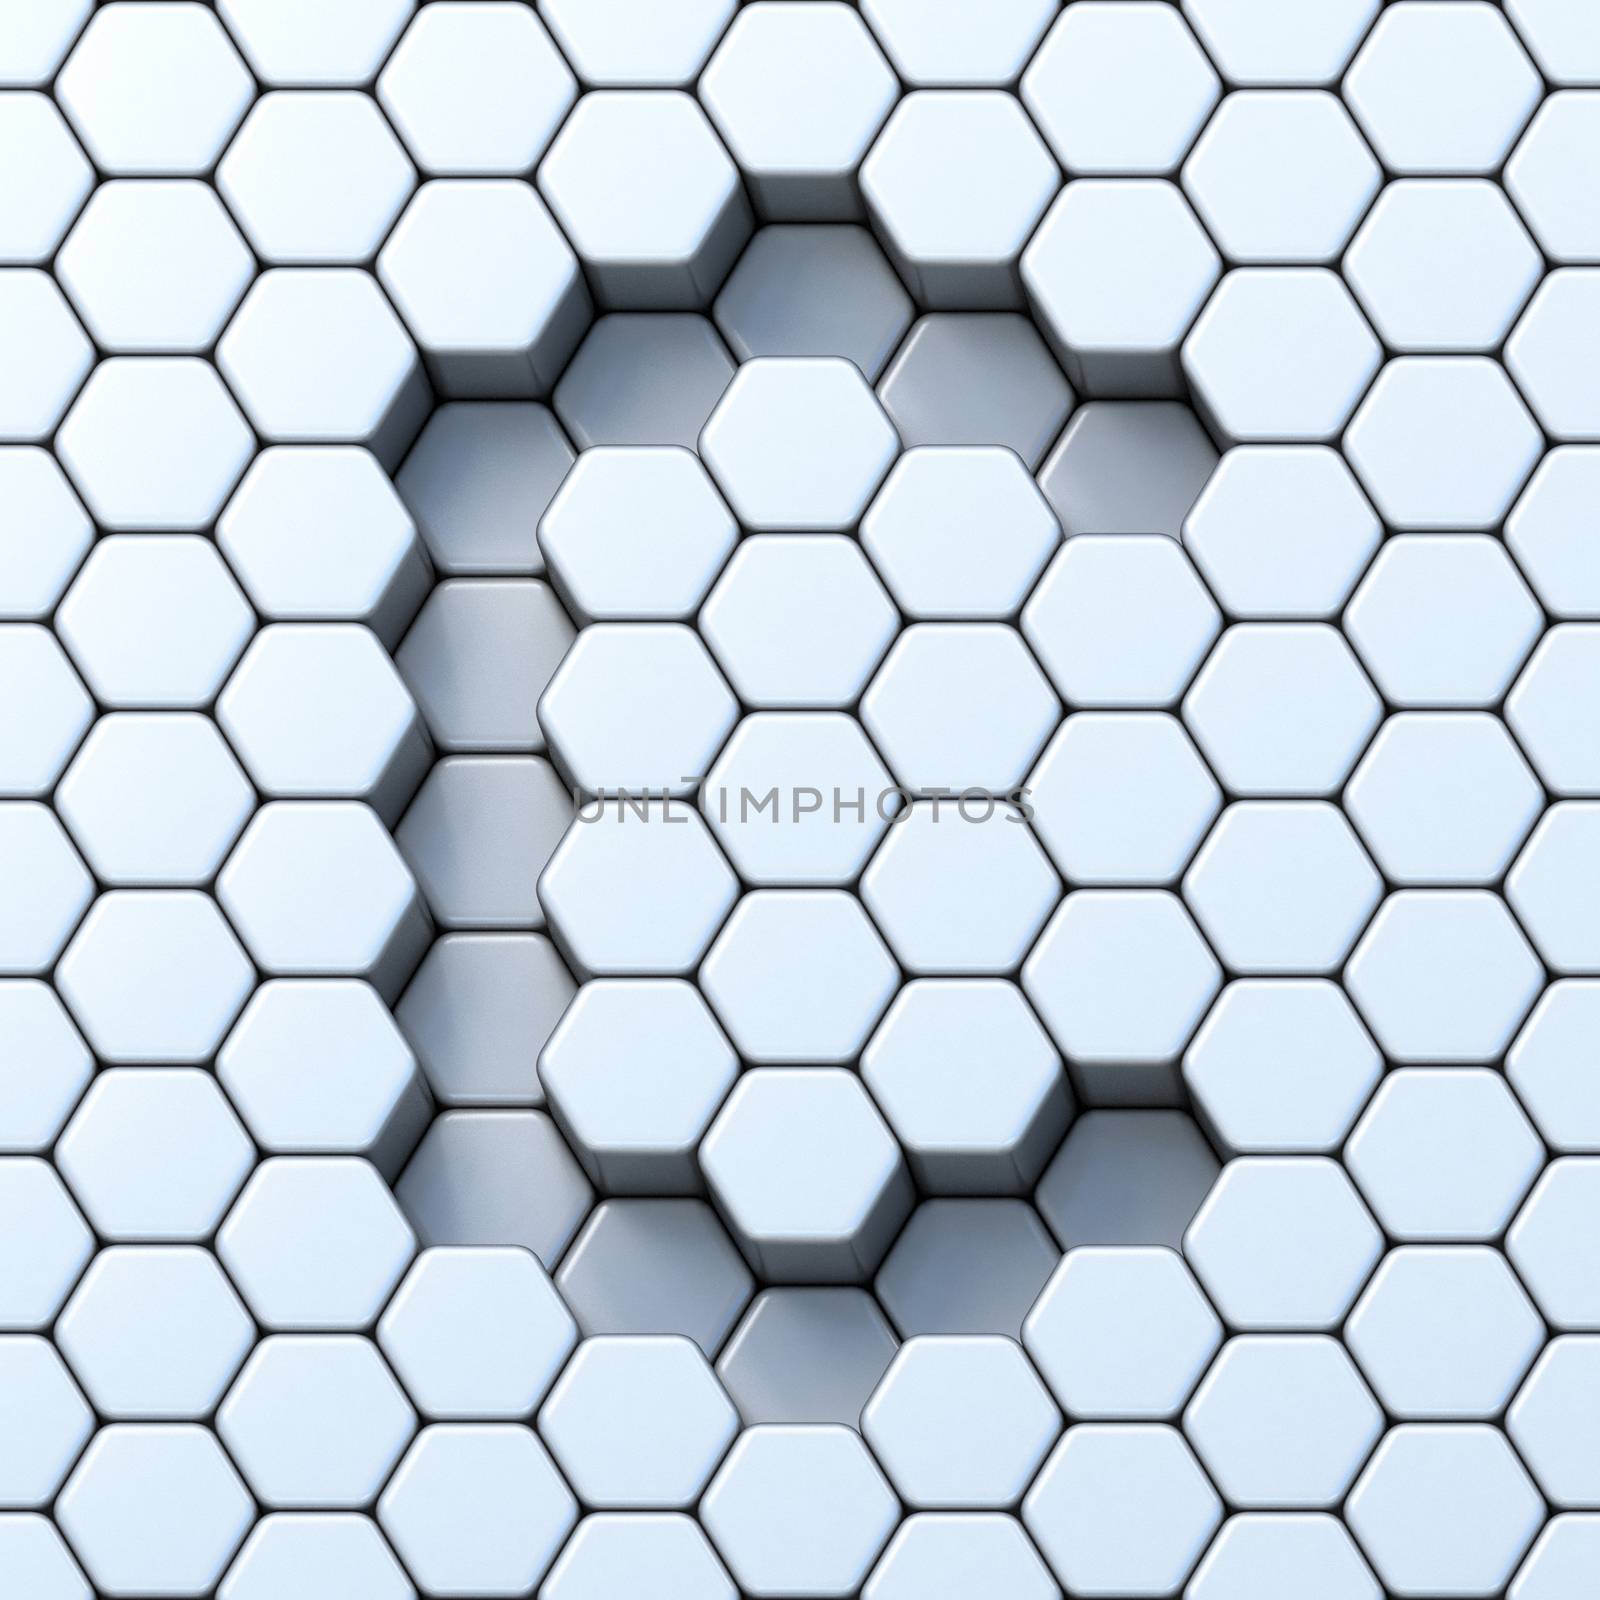 Hexagonal grid letter C 3D render illustration